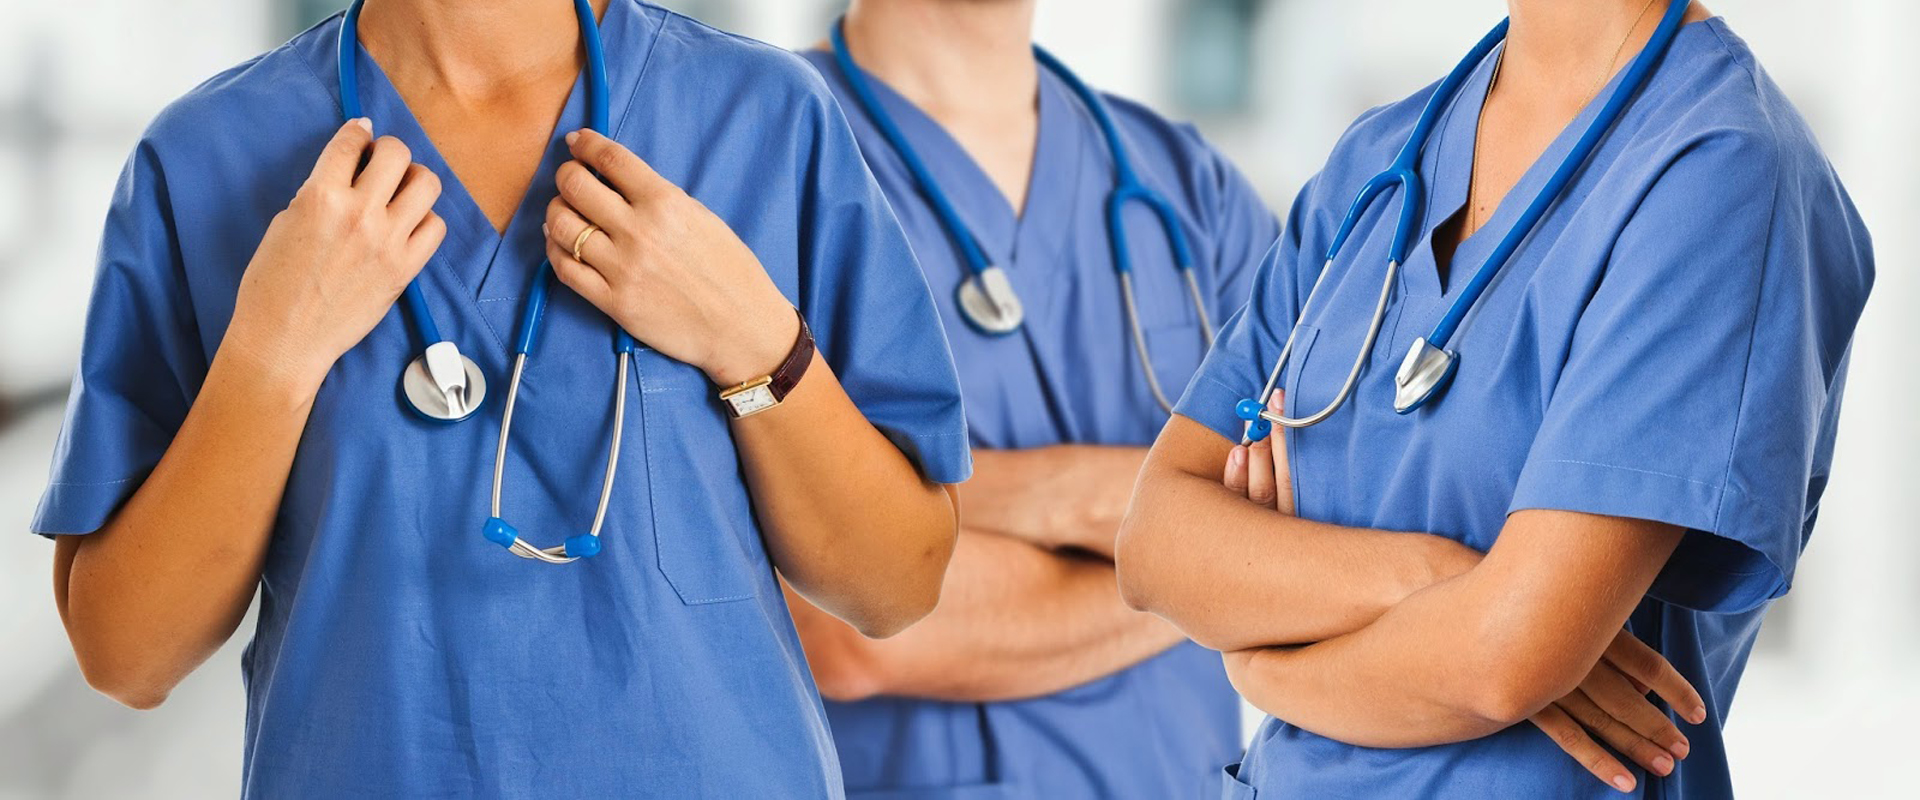 Bando per infermieri Veneto: “Numeri insufficienti, servono veri investimenti per superare le profonde carenze”.